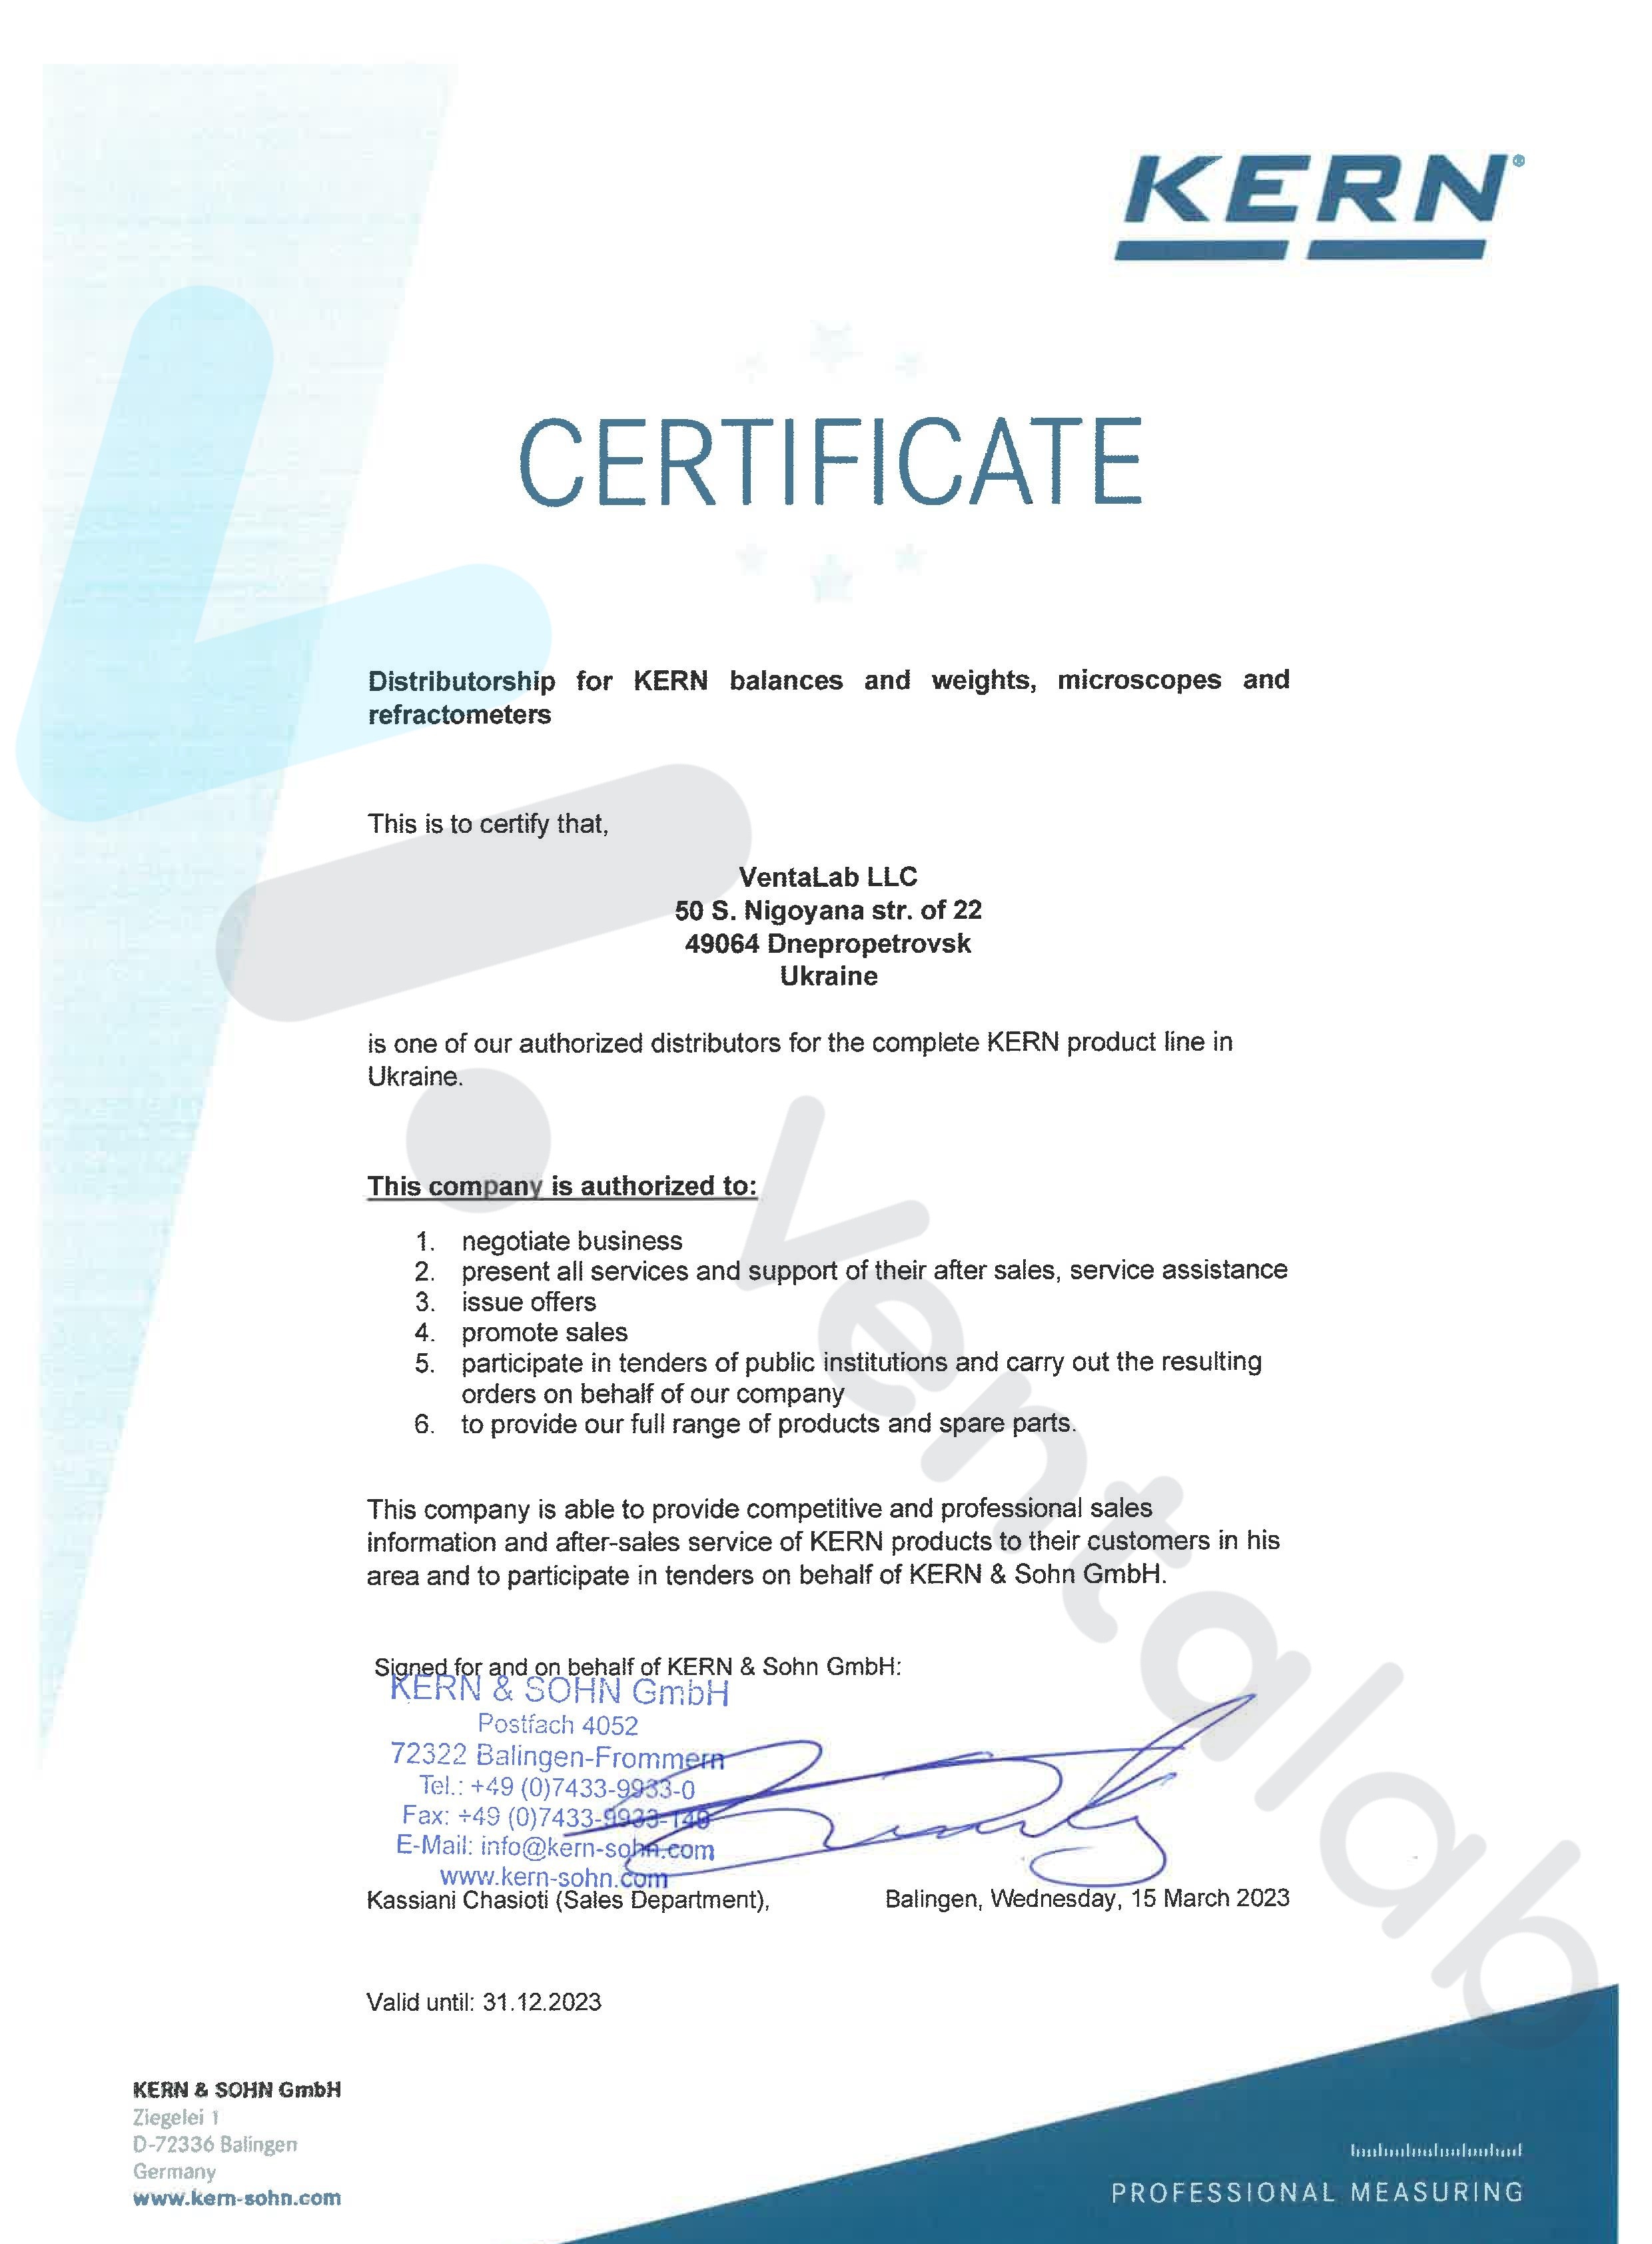 дилерский сертификат kern